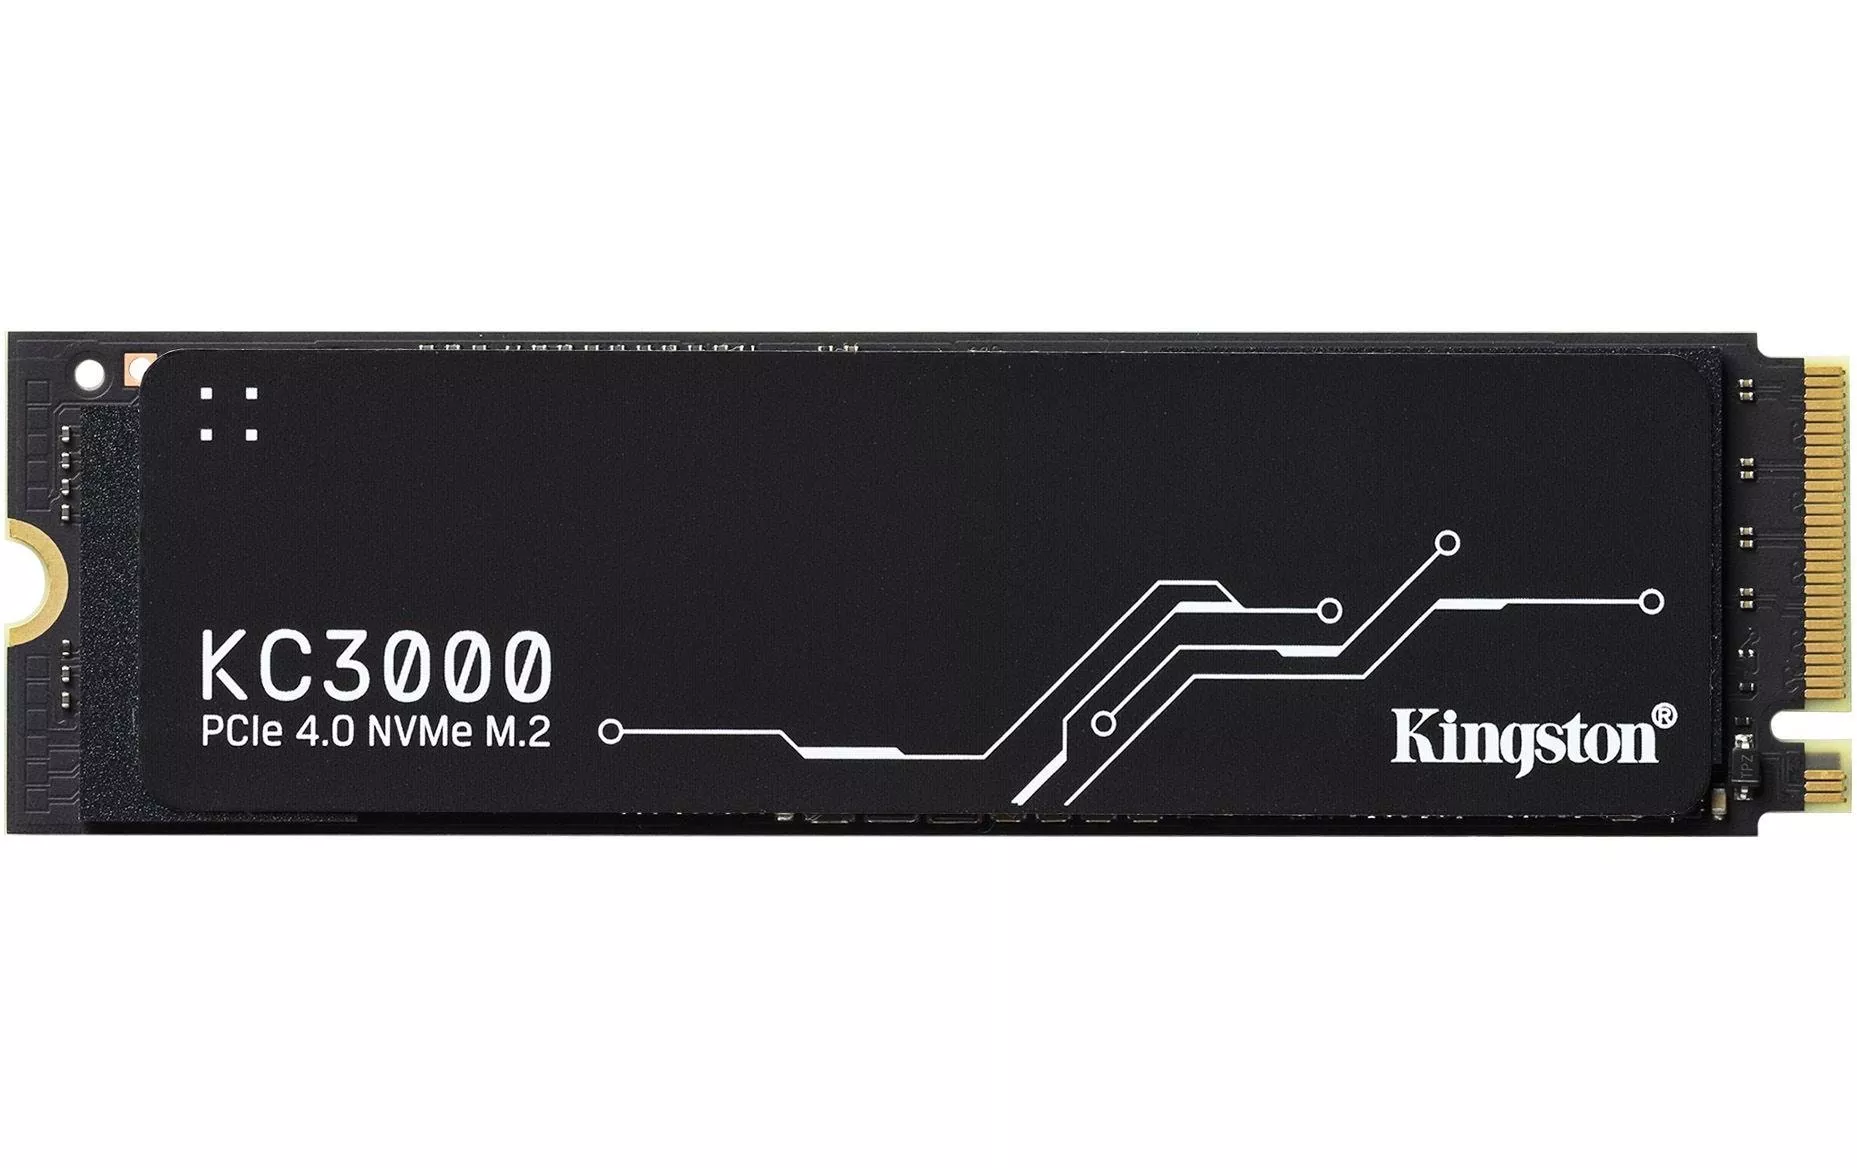 SSD KC3000 M.2 2280 NVMe 4096 GB